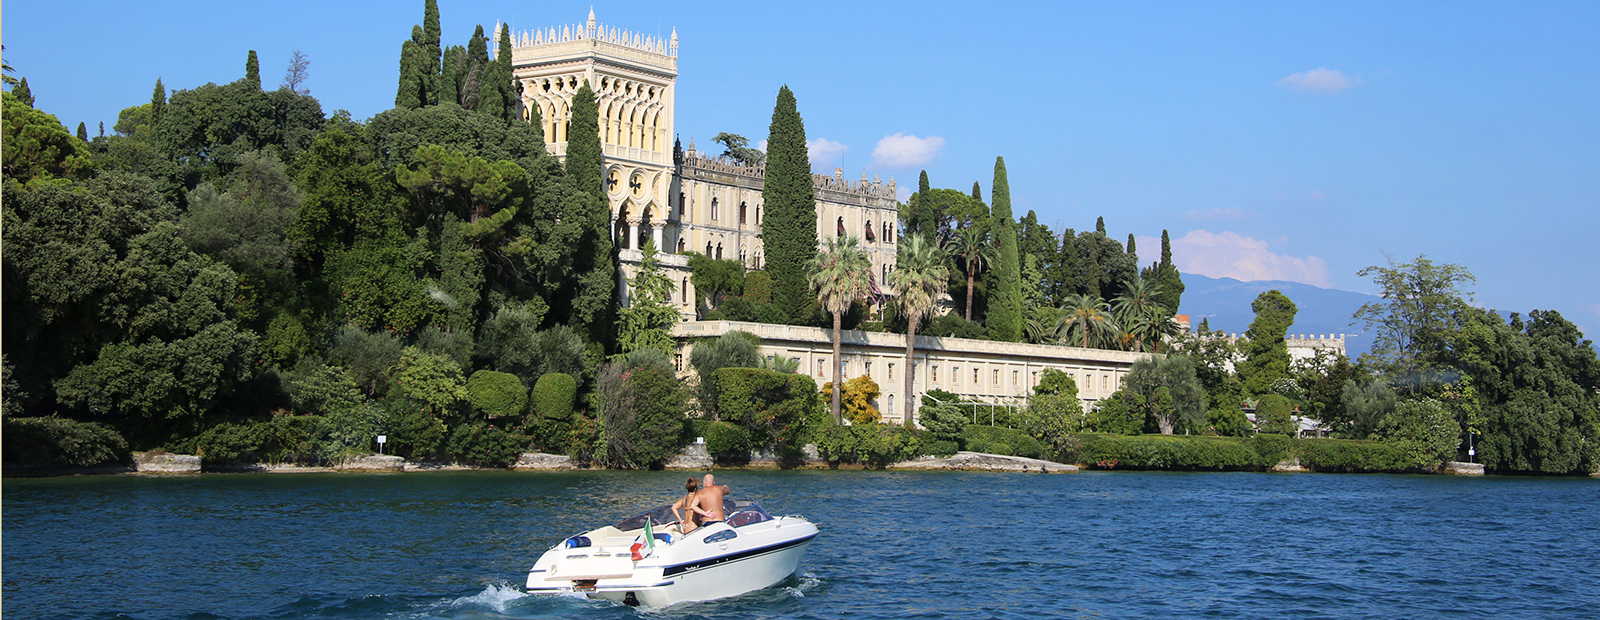 Exclusive holiday villas in Italy